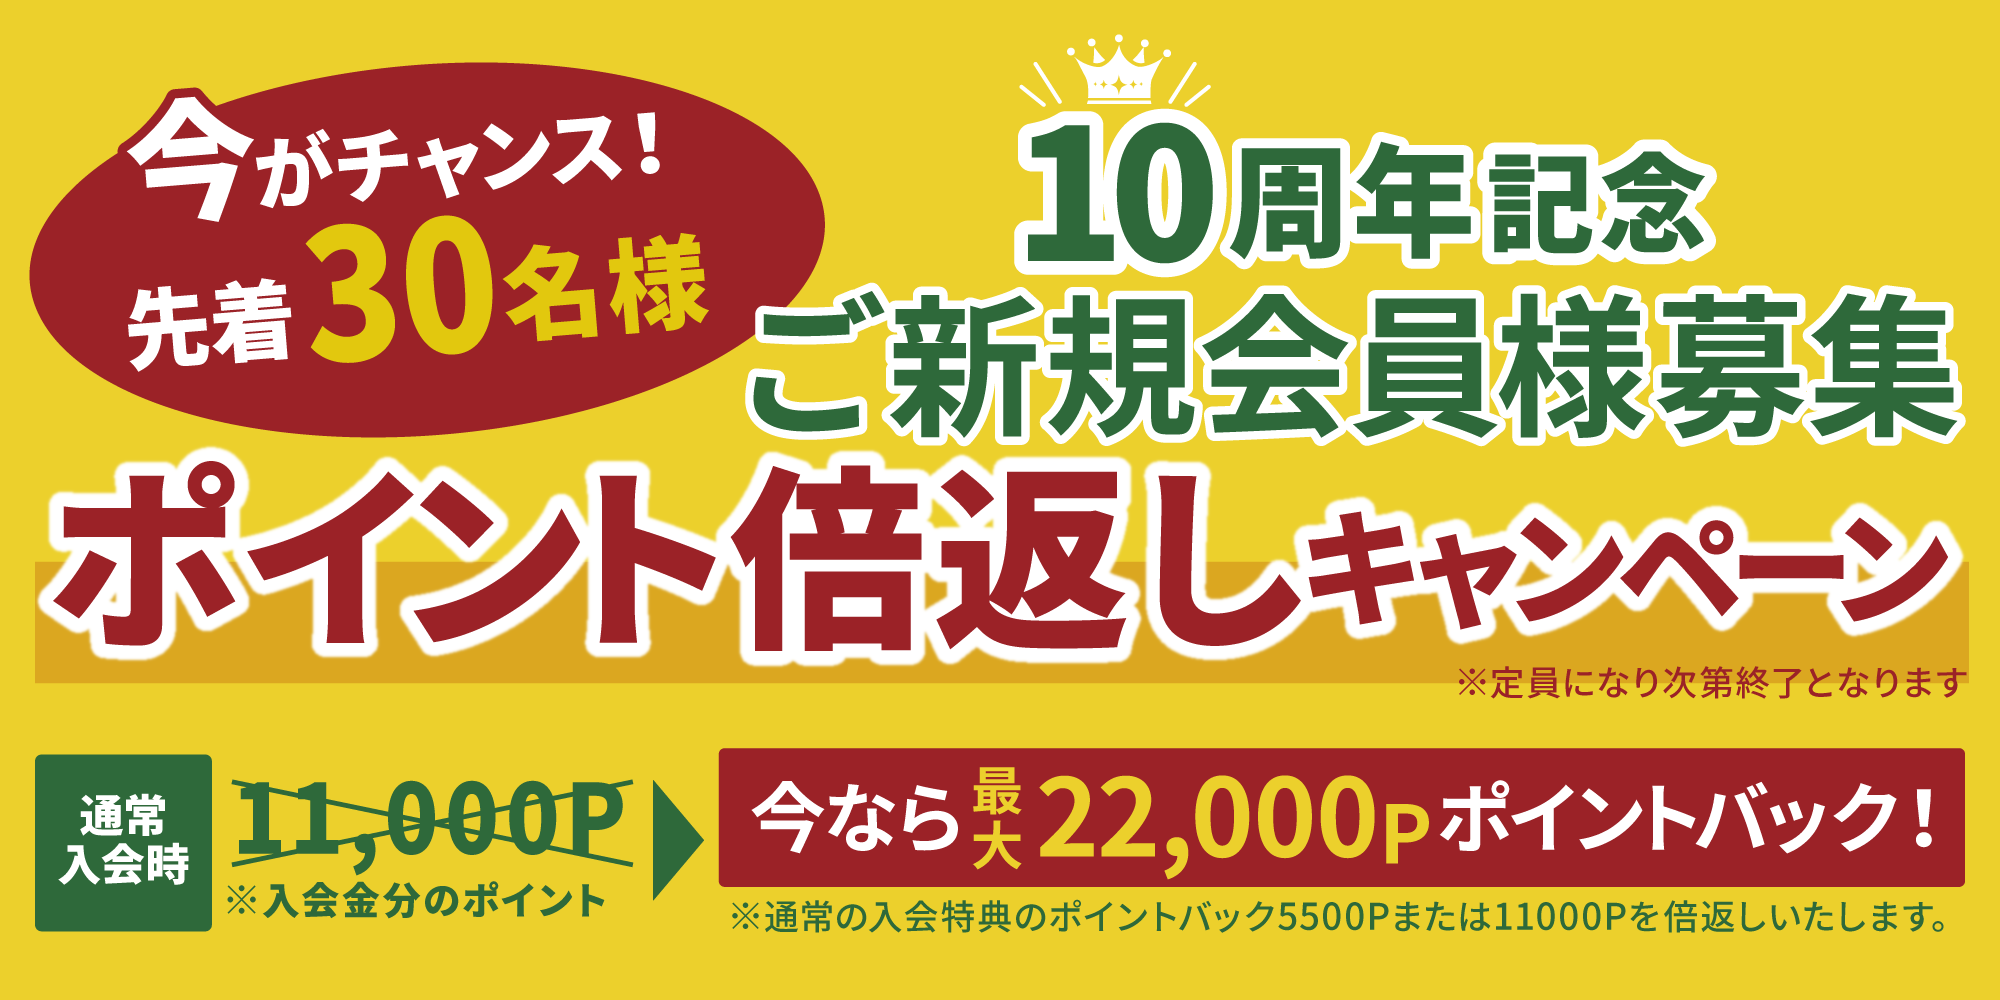 10周年記念新規入会キャンペーン